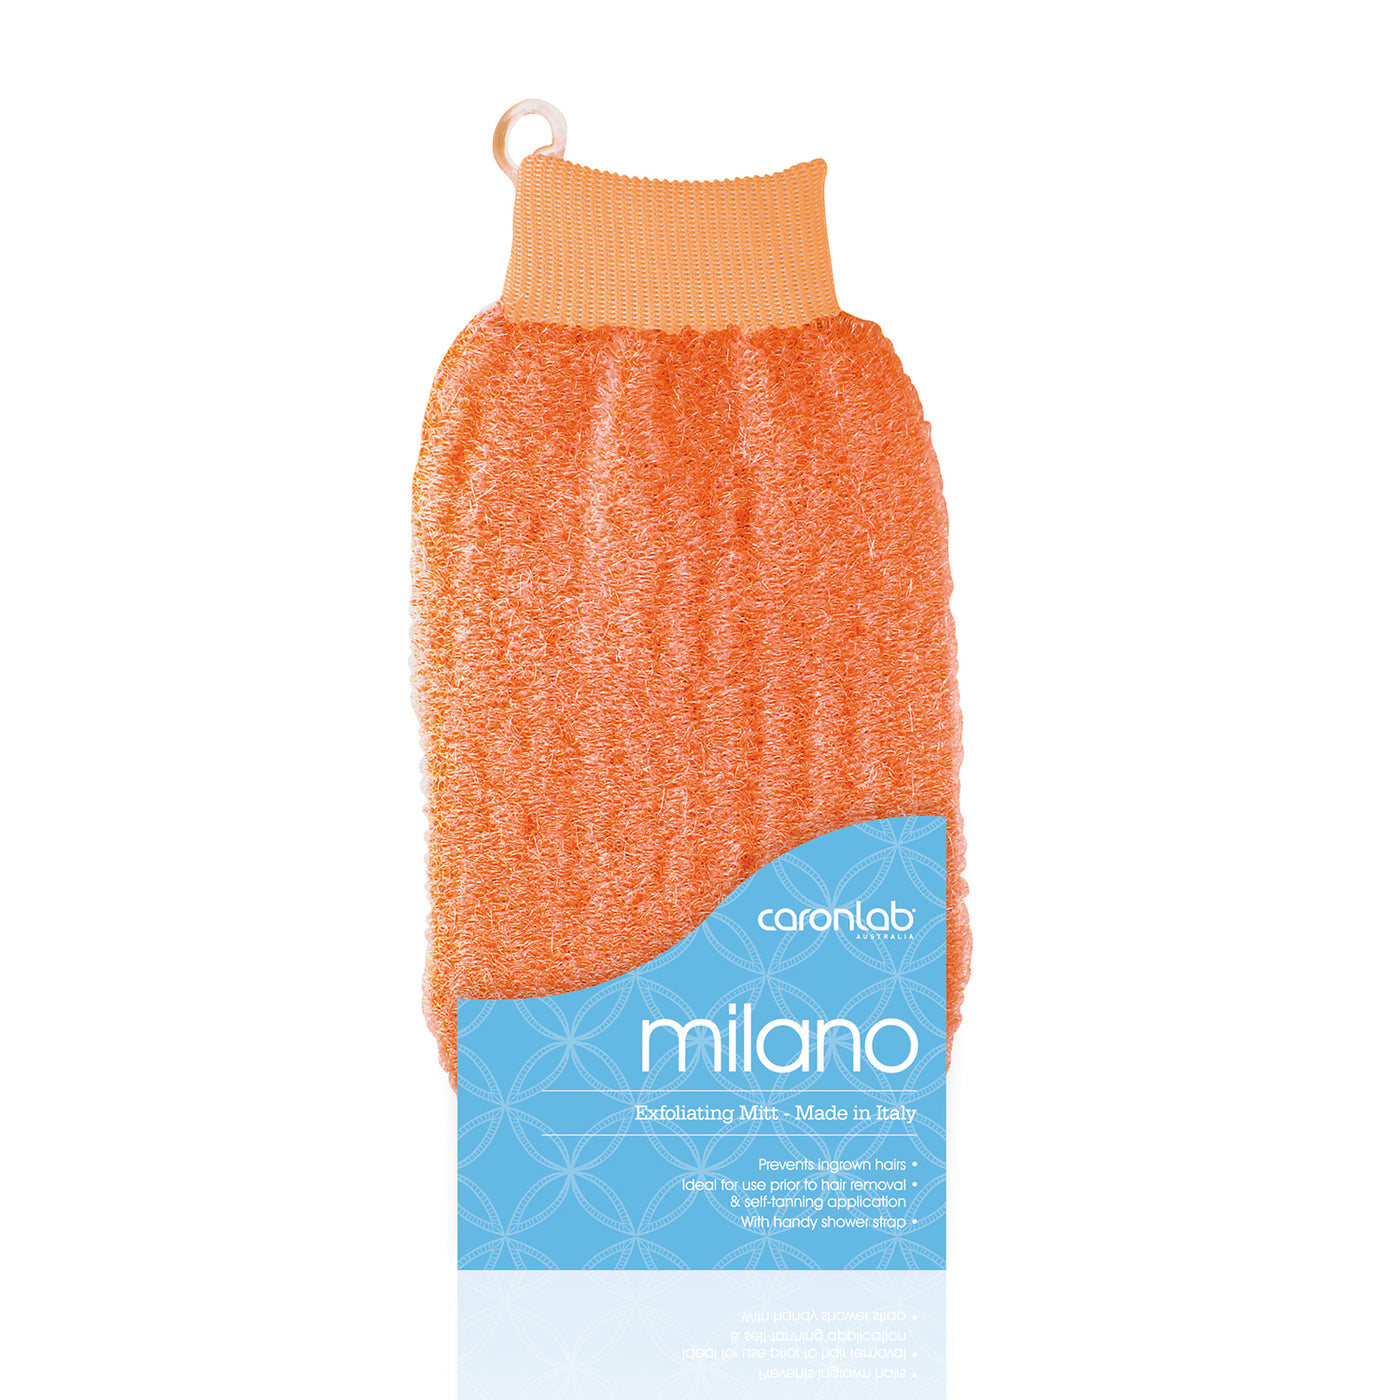 Caronlab Milano Exfoliating Massage Mitt orange